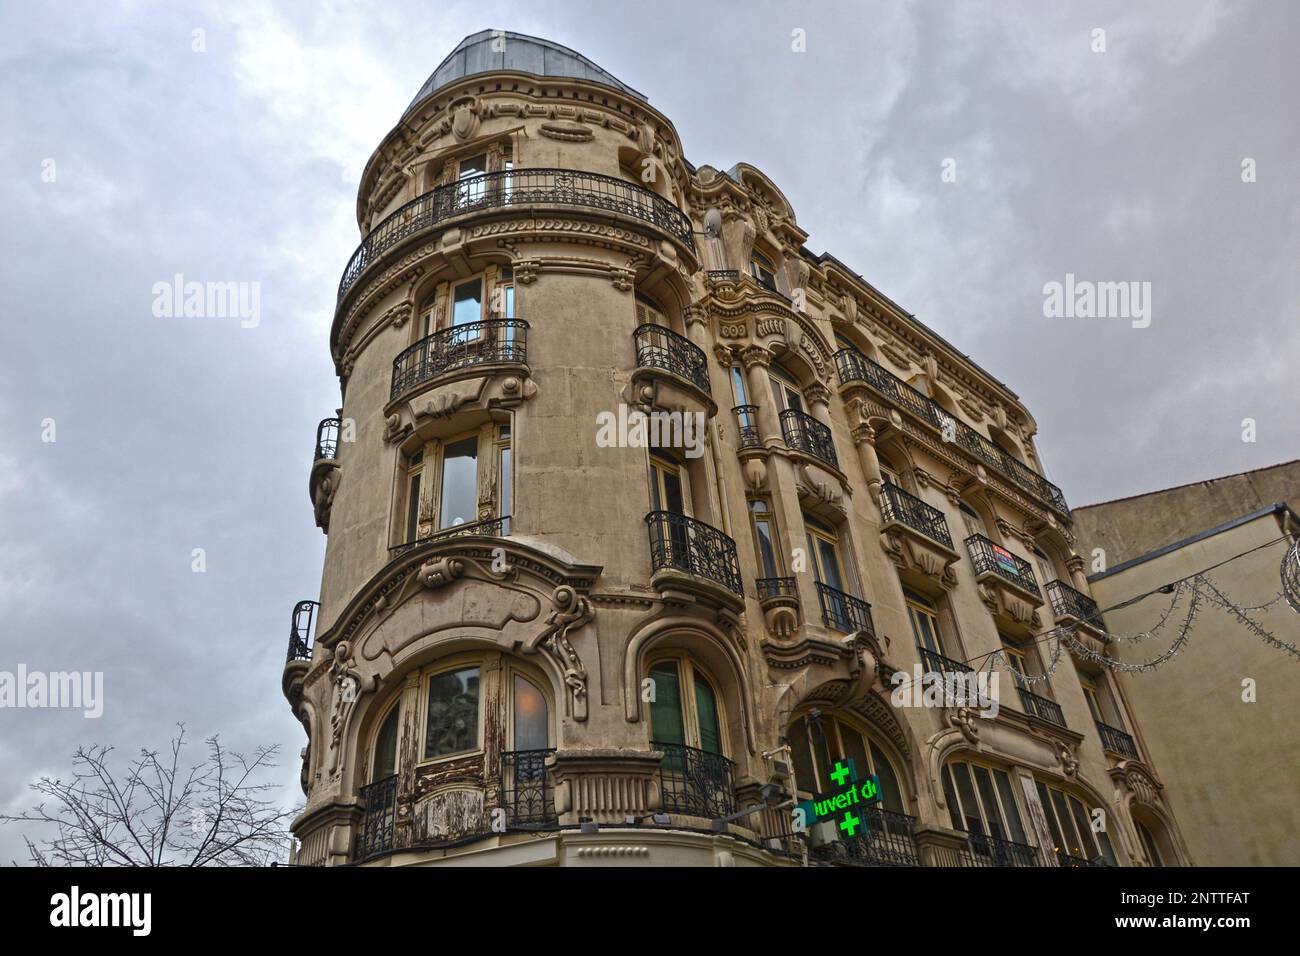 Saint-Etienne, France - 27 janvier 2020 : accent sur un vieux bâtiment, construit dans le style haussmannien. Il y a une pharmacie au rez-de-chaussée. Banque D'Images